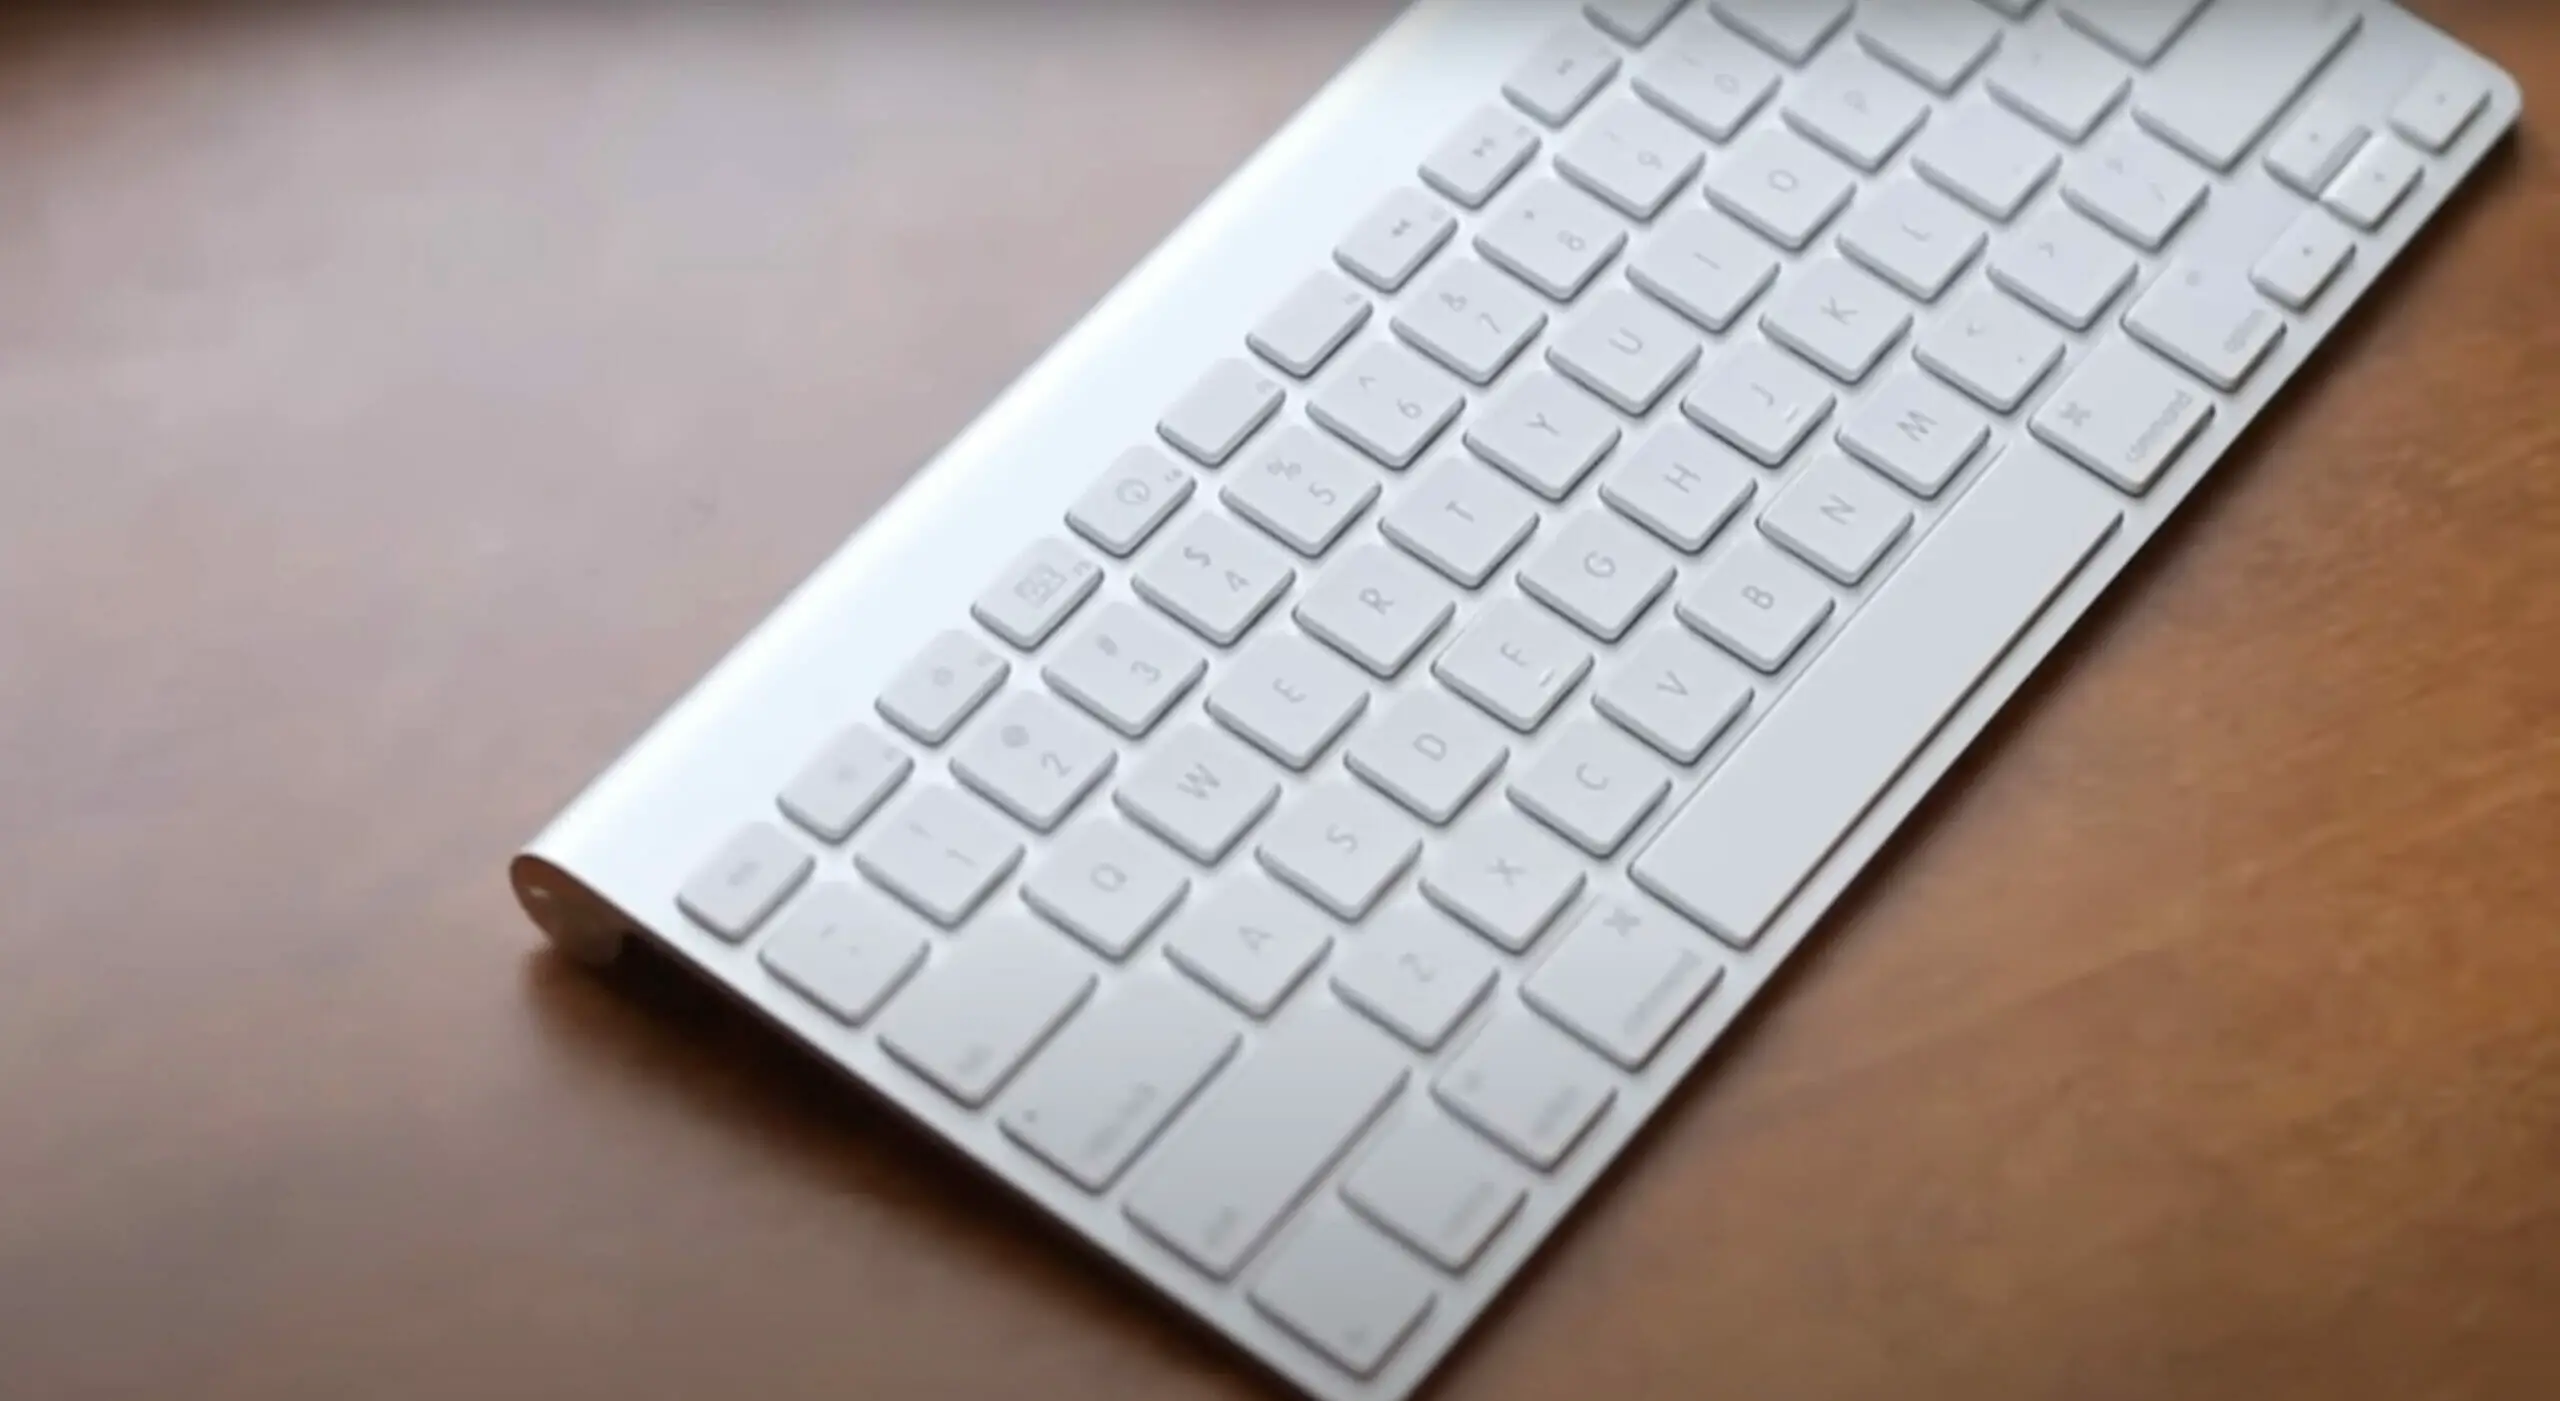 apple wireless bluetooth keyboard